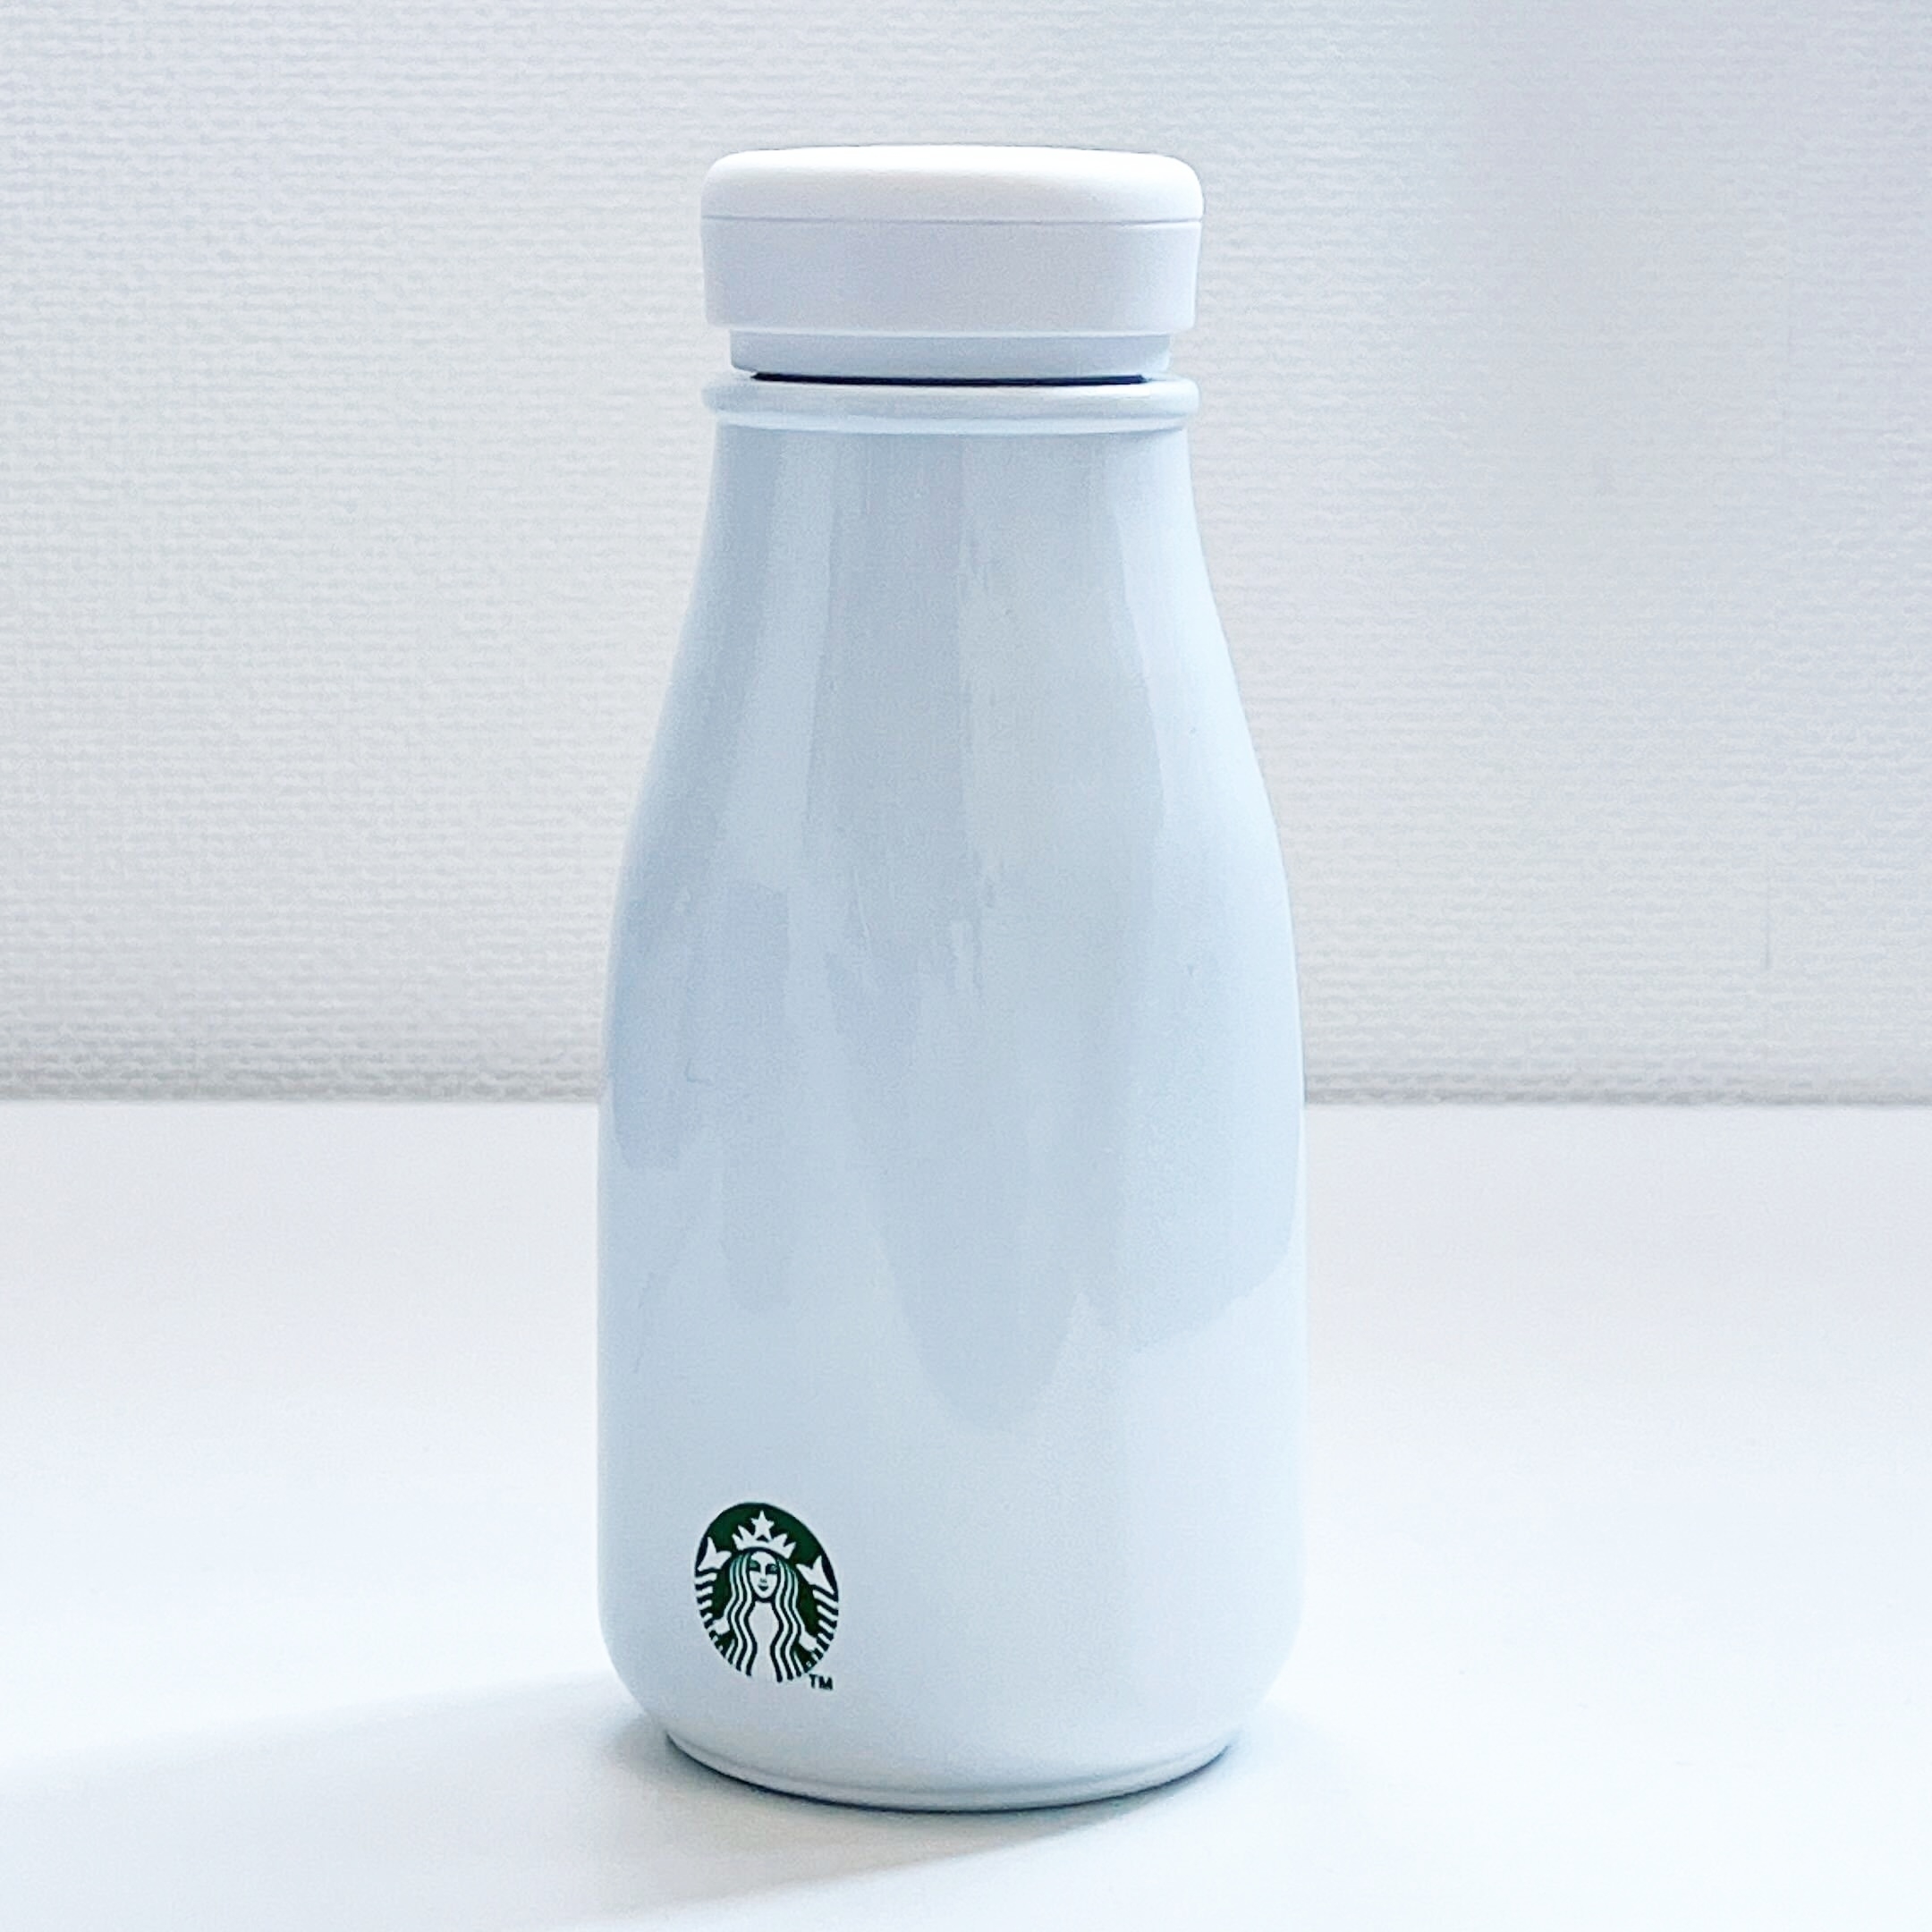 Starbucks Coffee（スターバックスコーヒー）のおすすめ雑貨「ステンレスミニボトルホワイト237ml」